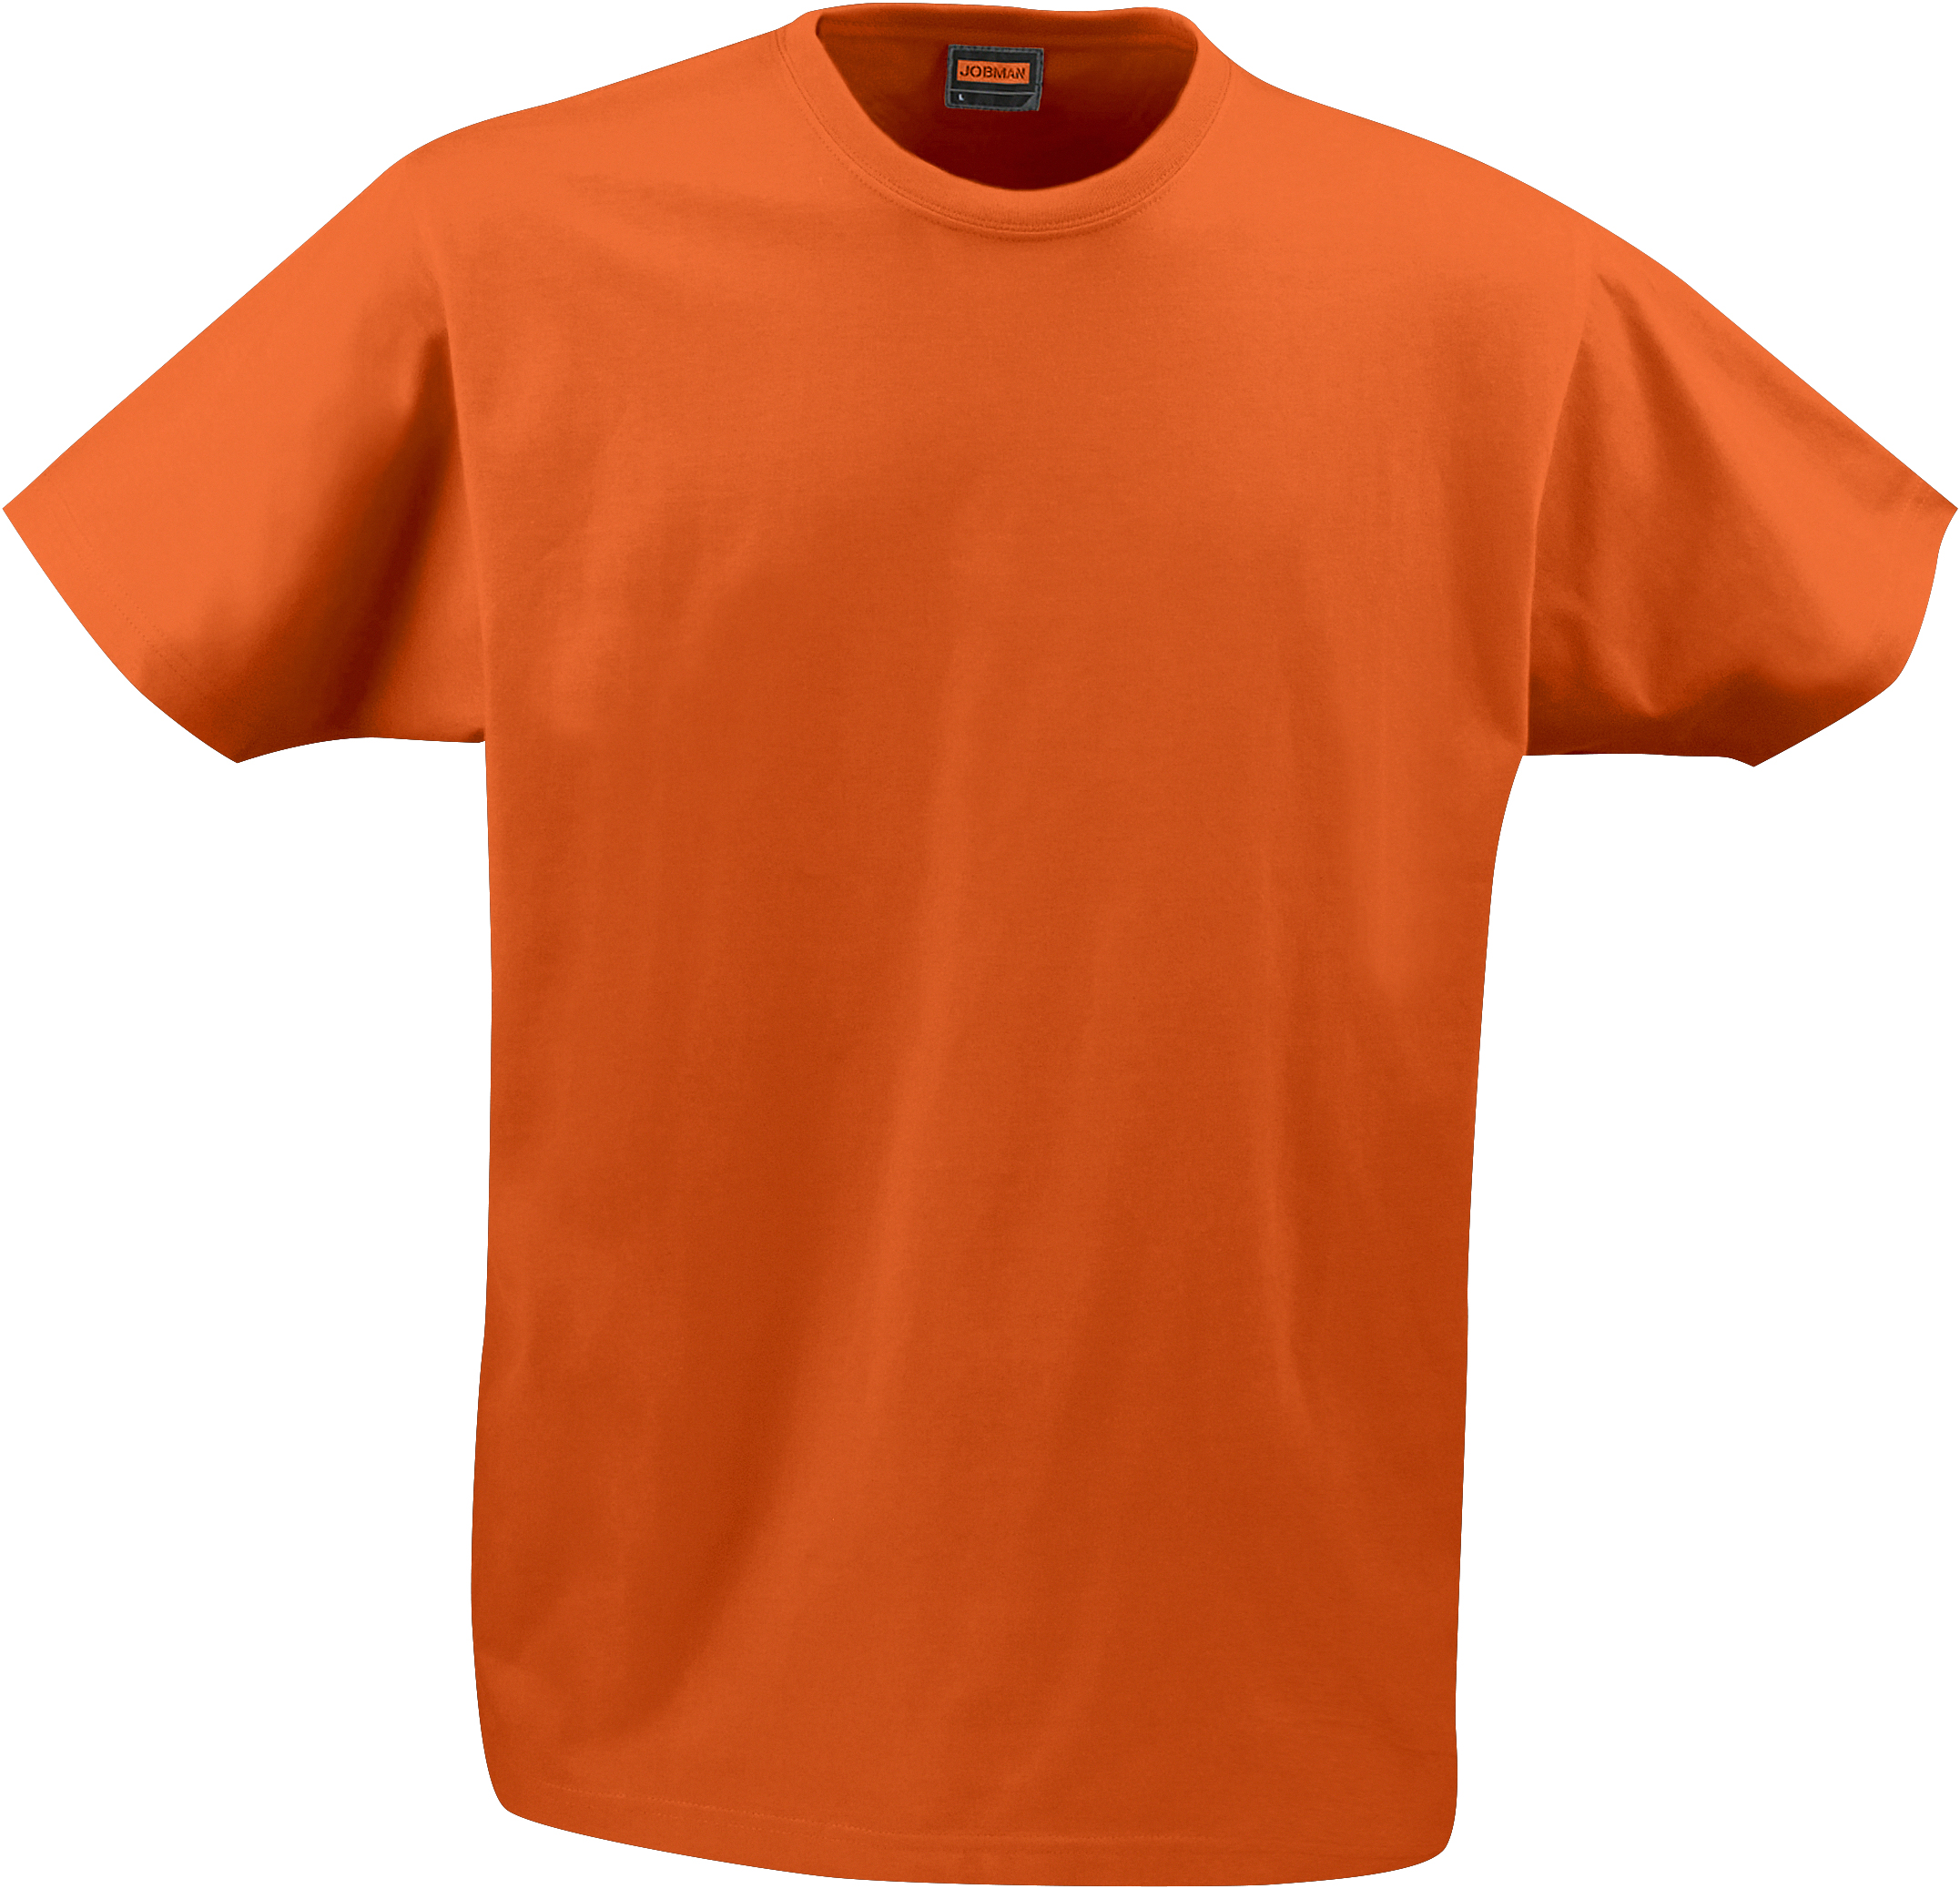 5264 T-SHIRT HOMME L orange